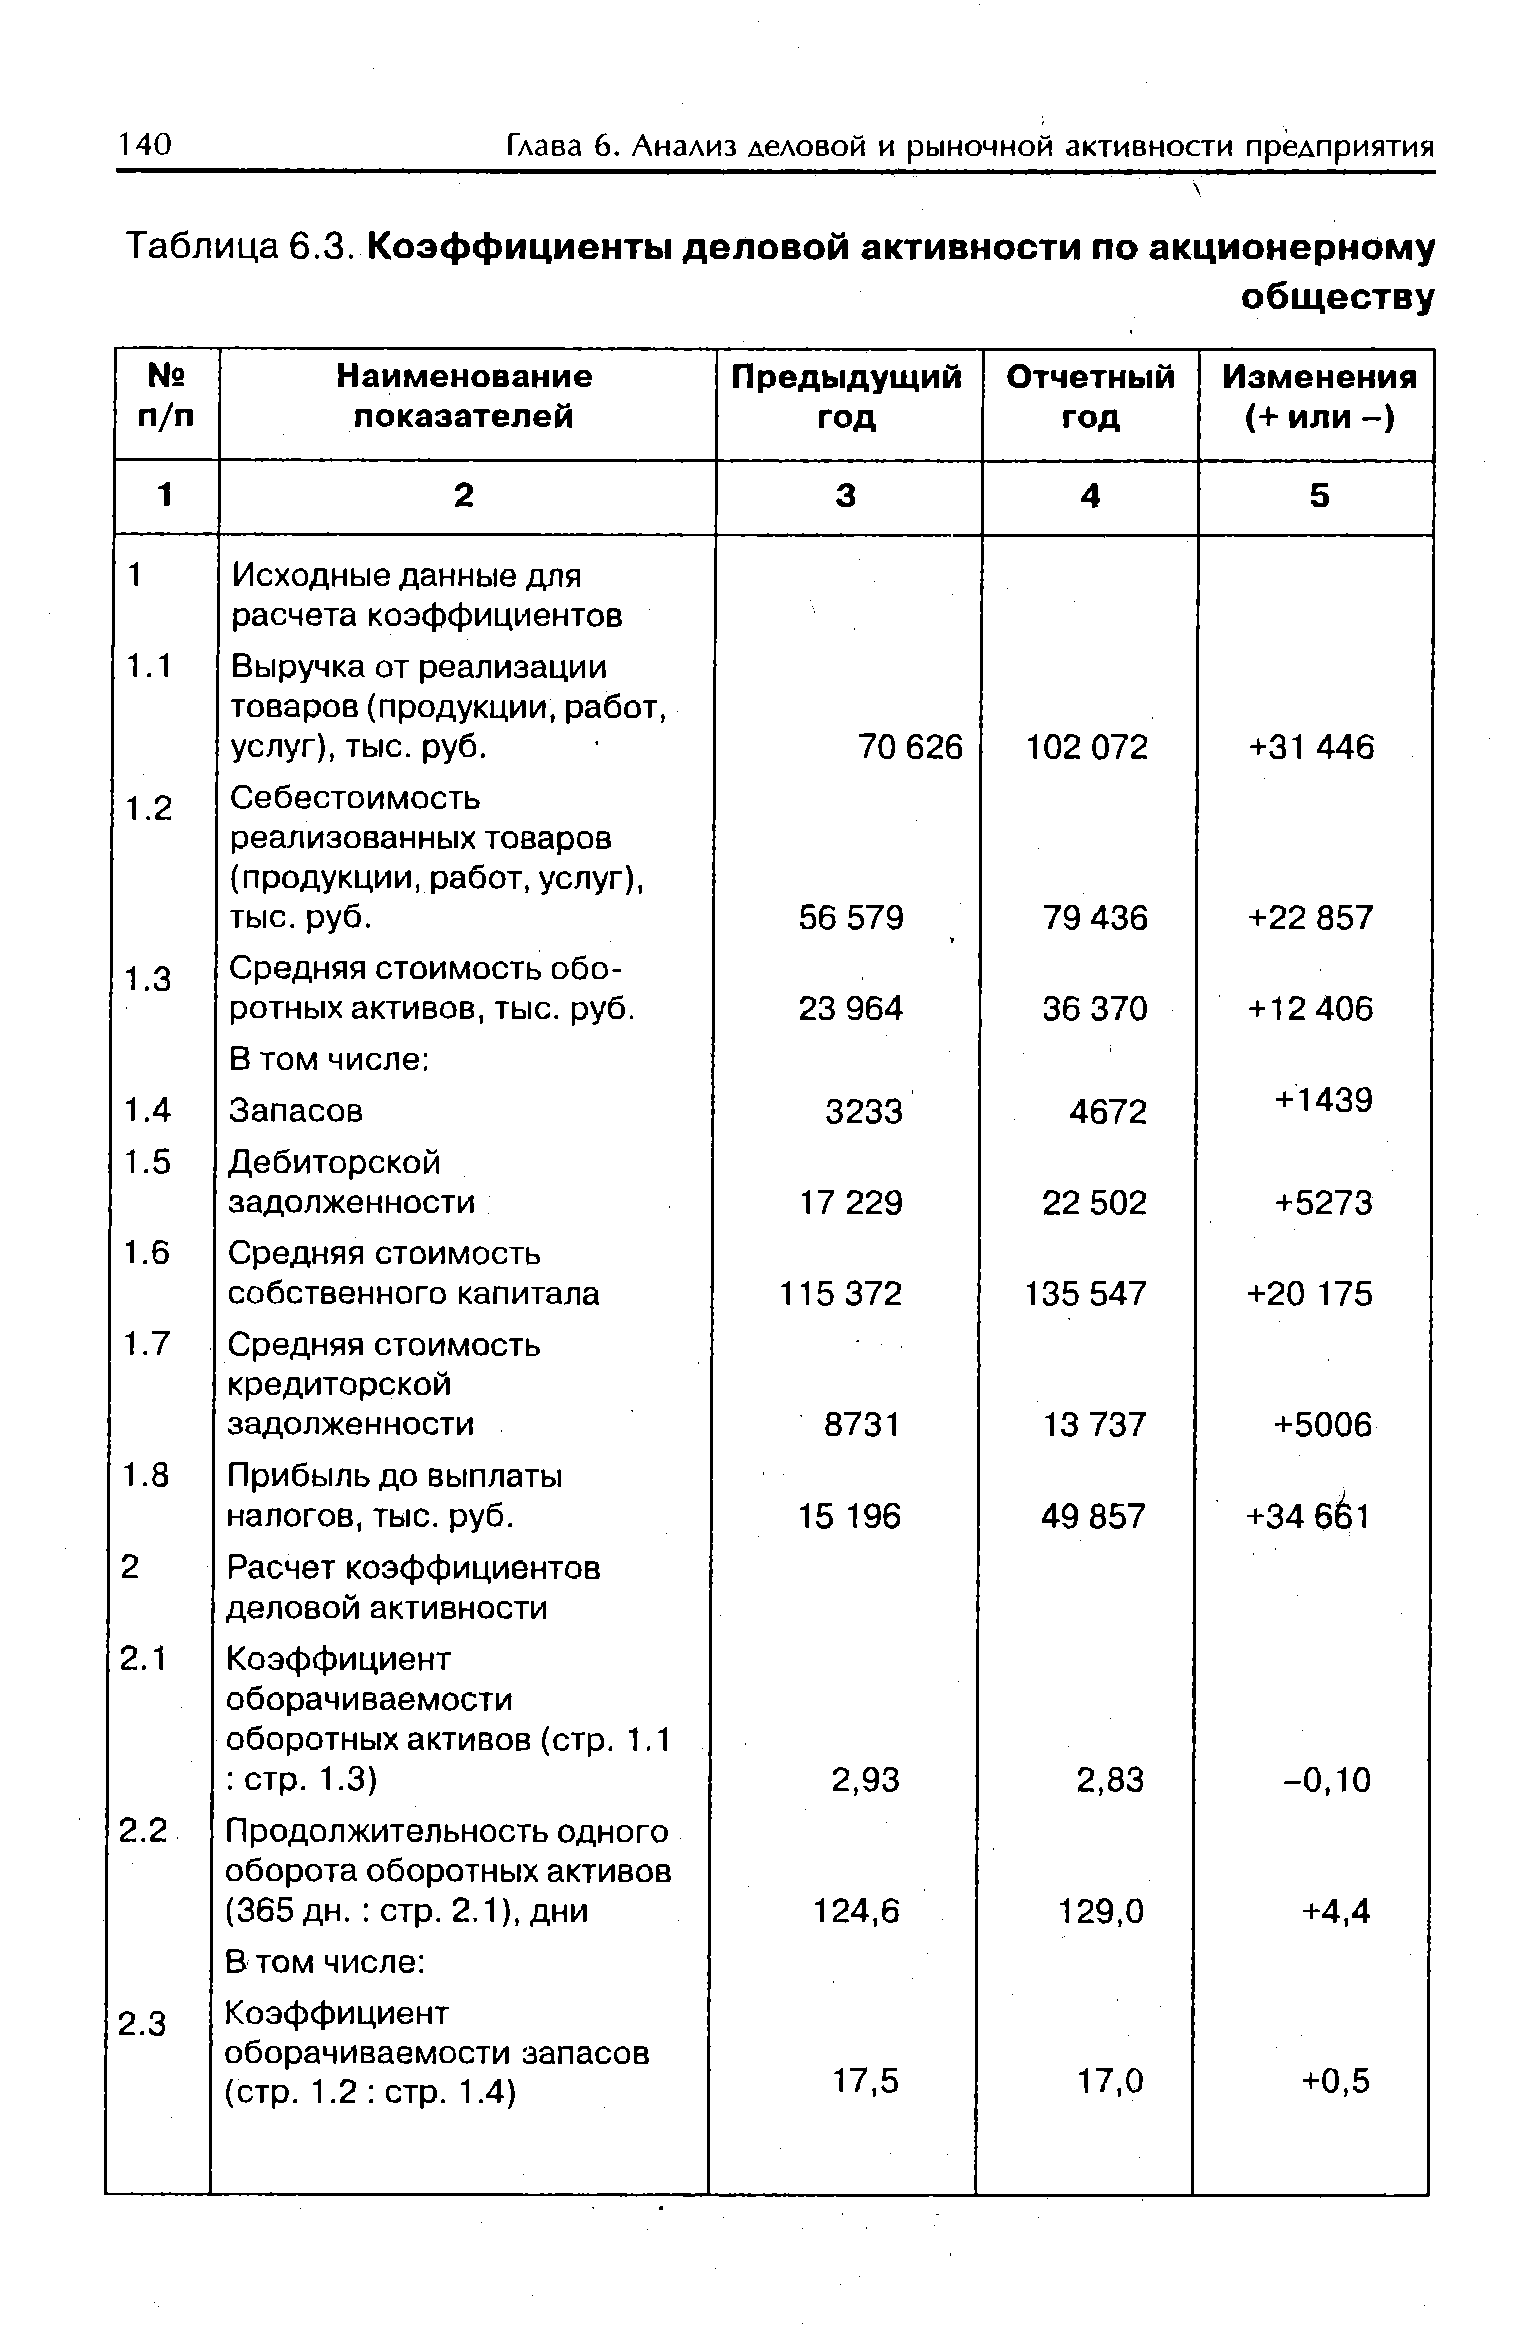 Таблица 6.3. Коэффициенты деловой активности по акционерному
